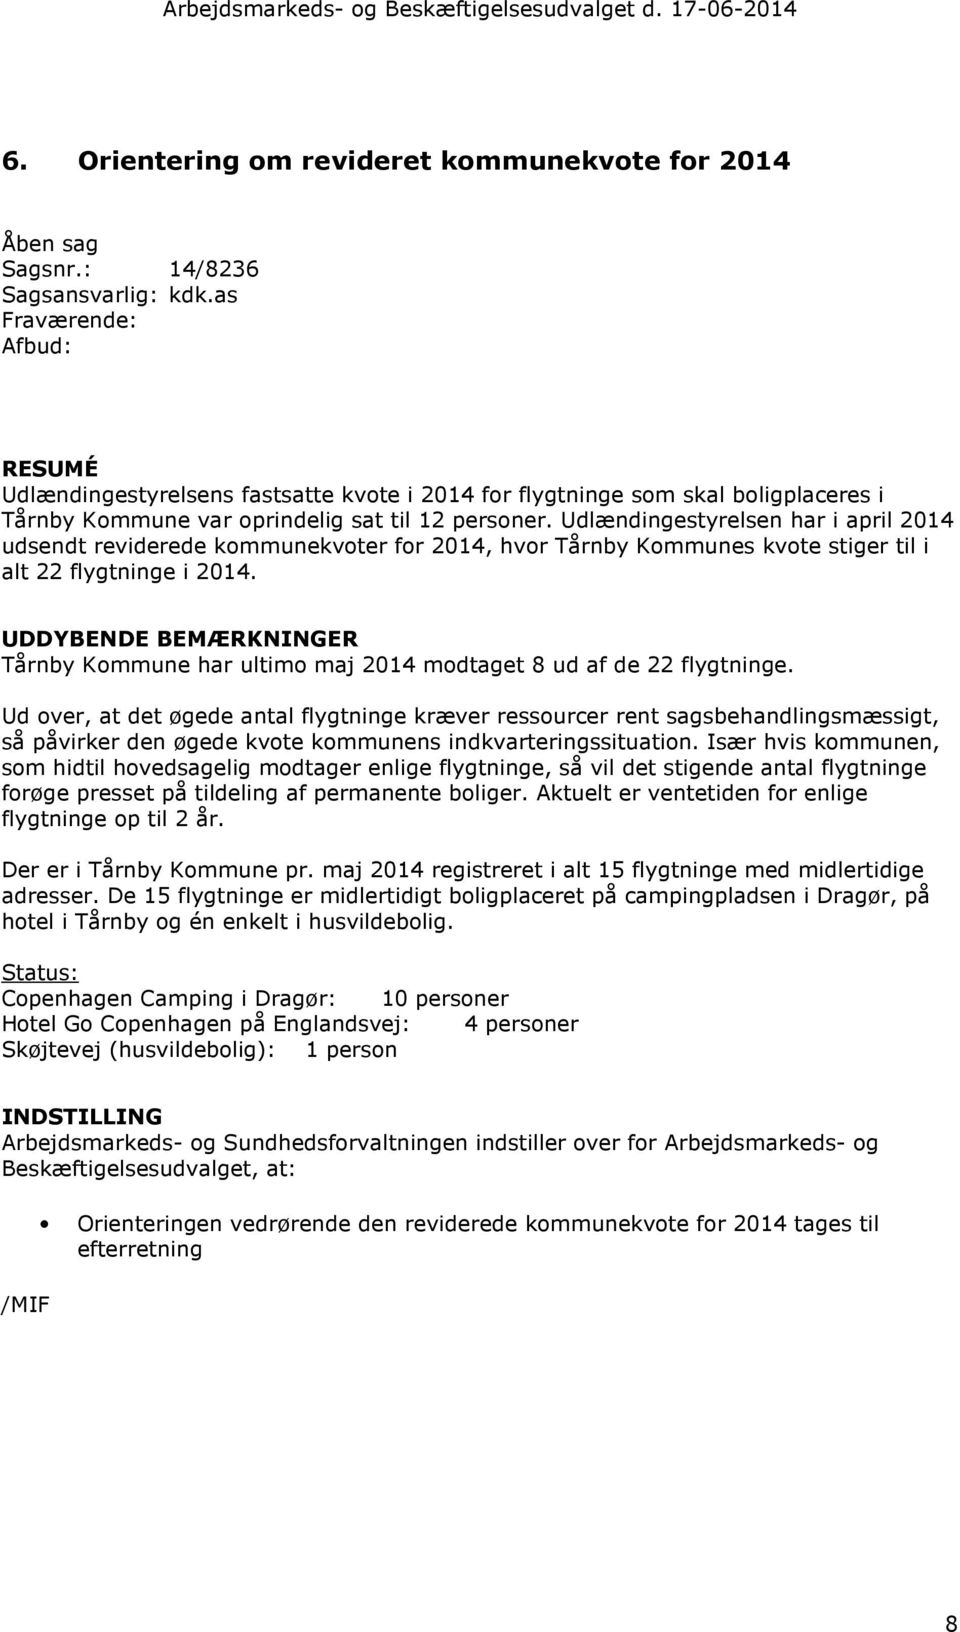 Udlændingestyrelsen har i april 2014 udsendt reviderede kommunekvoter for 2014, hvor Tårnby Kommunes kvote stiger til i alt 22 flygtninge i 2014.